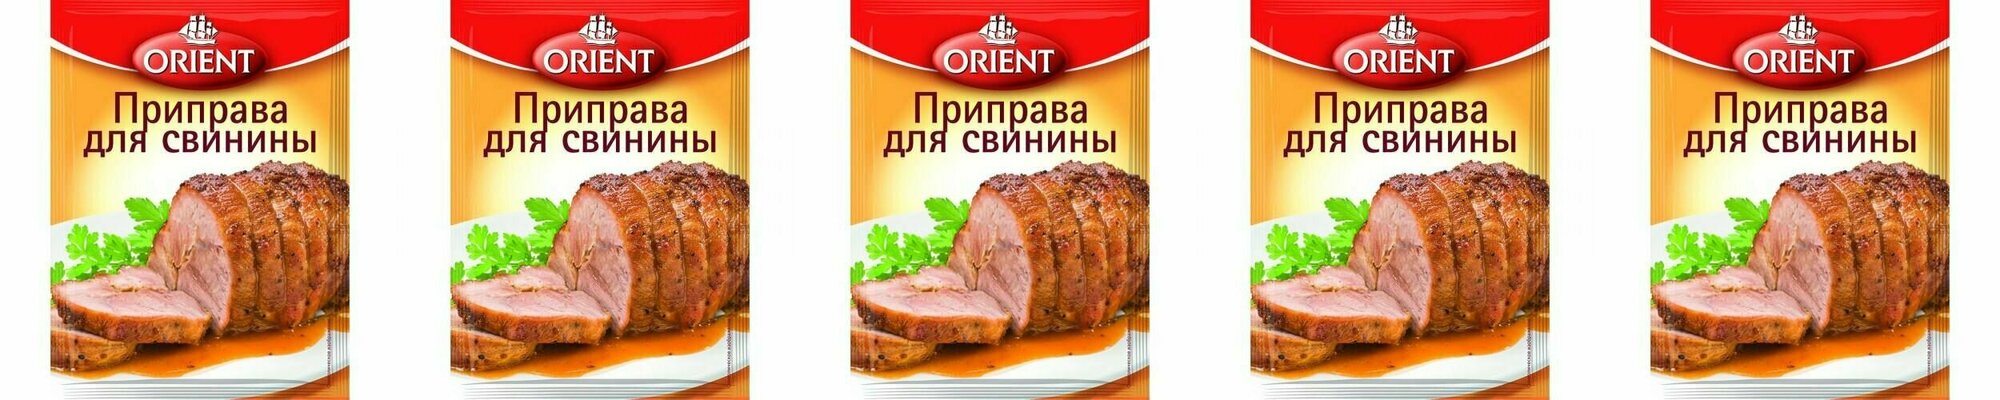 Orient Смесь приправ Для свинины, 20 г, 5 шт